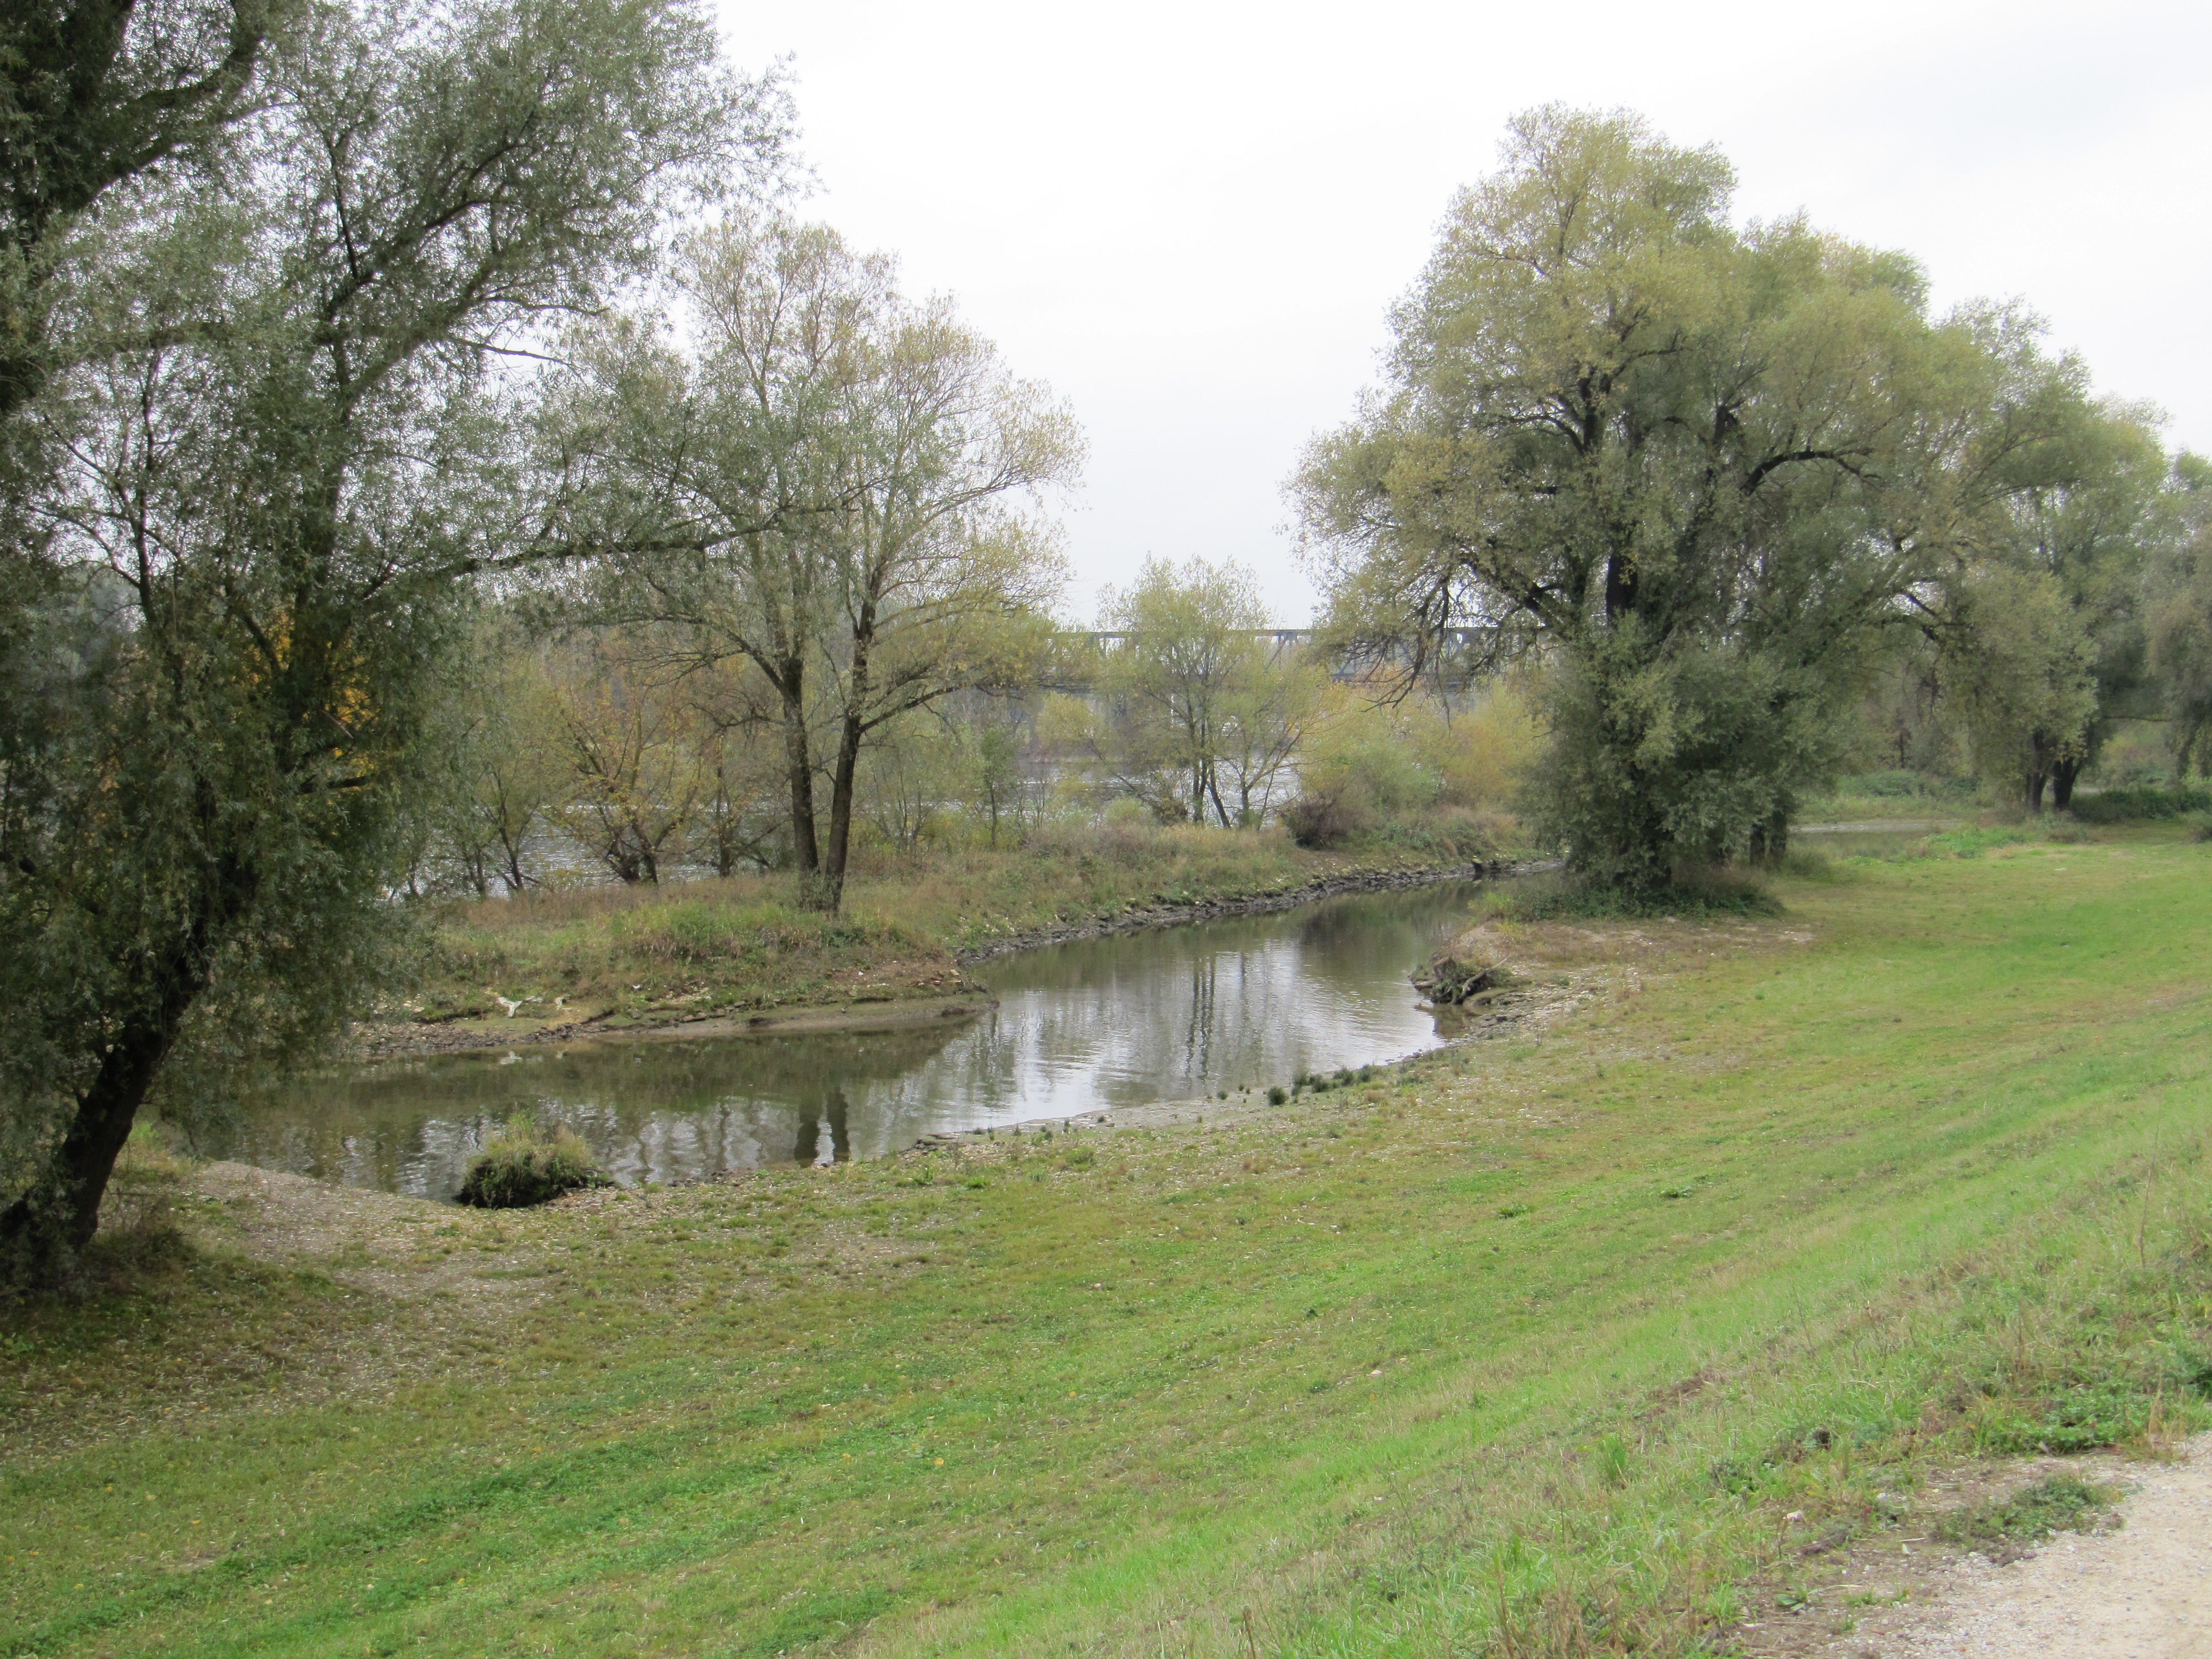 Donaunebenarm mit Bepflanzung auf beiden Seiten